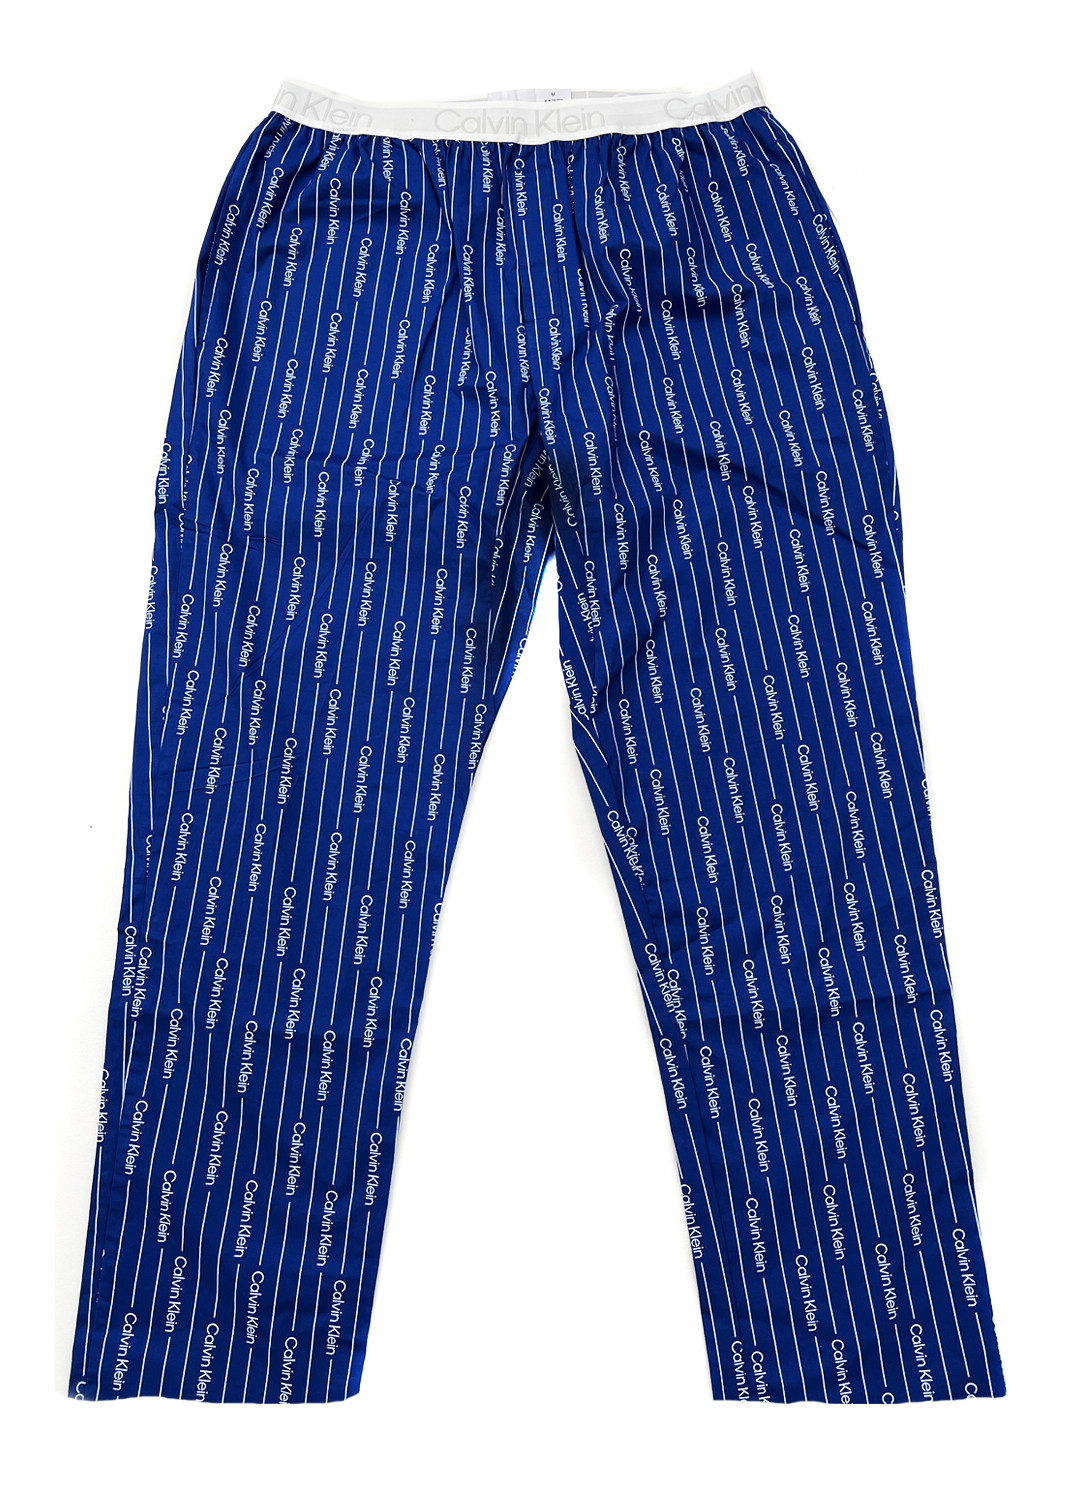 Pánské pyžamové kalhoty - NM2180E 1MR - modrá/bílá - Calvin Klein modrá/bílá XL